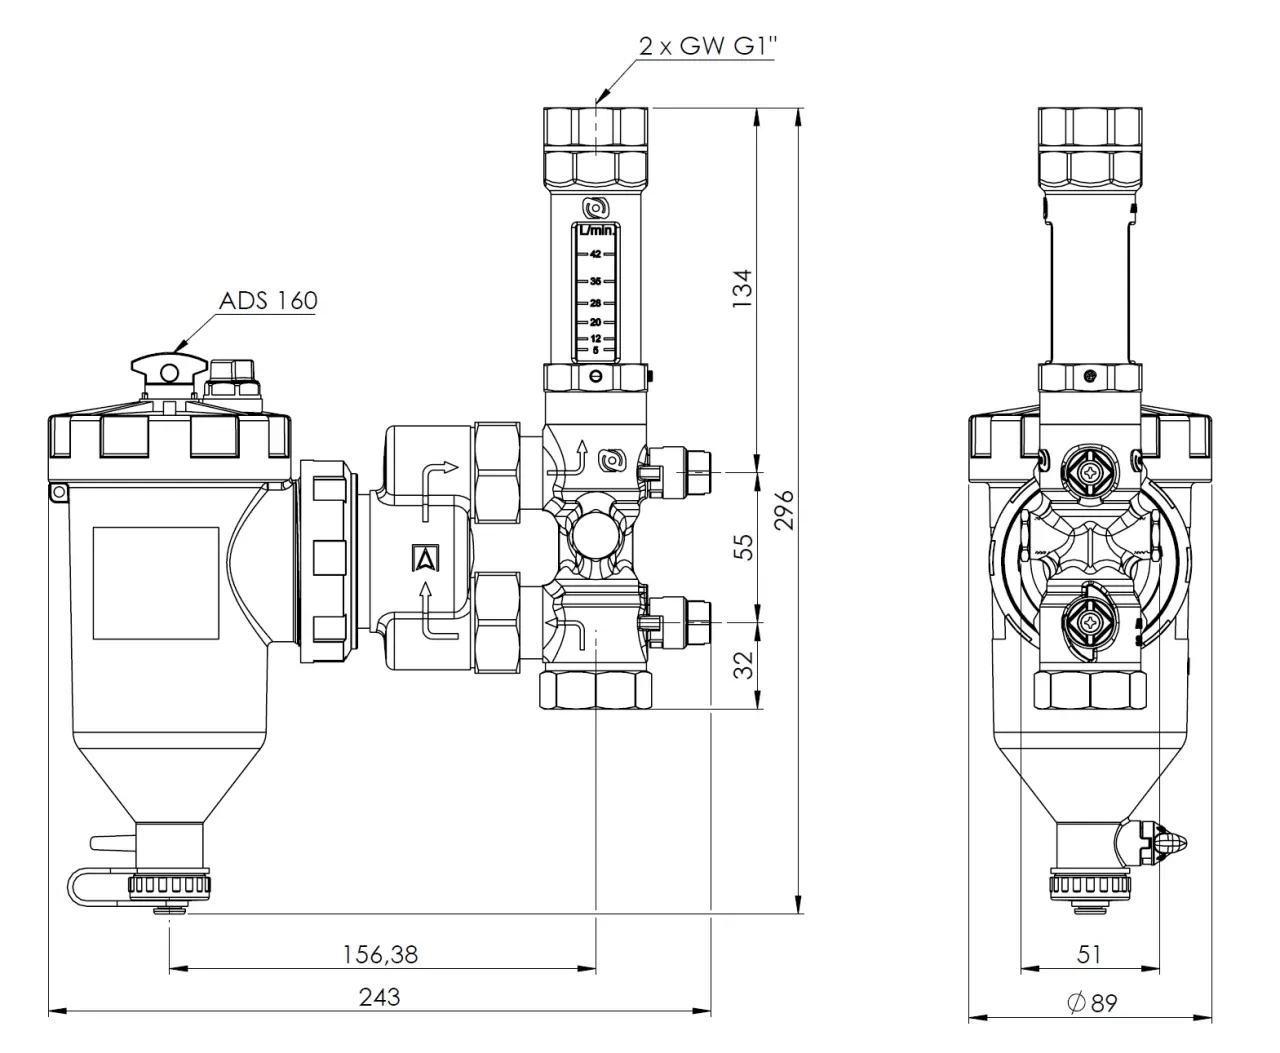 Zespół armatury serwisowej AHS 560 do pomp ciepła, z separatorem zanieczyszczeń ADS 160, z przepływomierzem 5÷42 l/min, przyłącza GW G1" - budowa